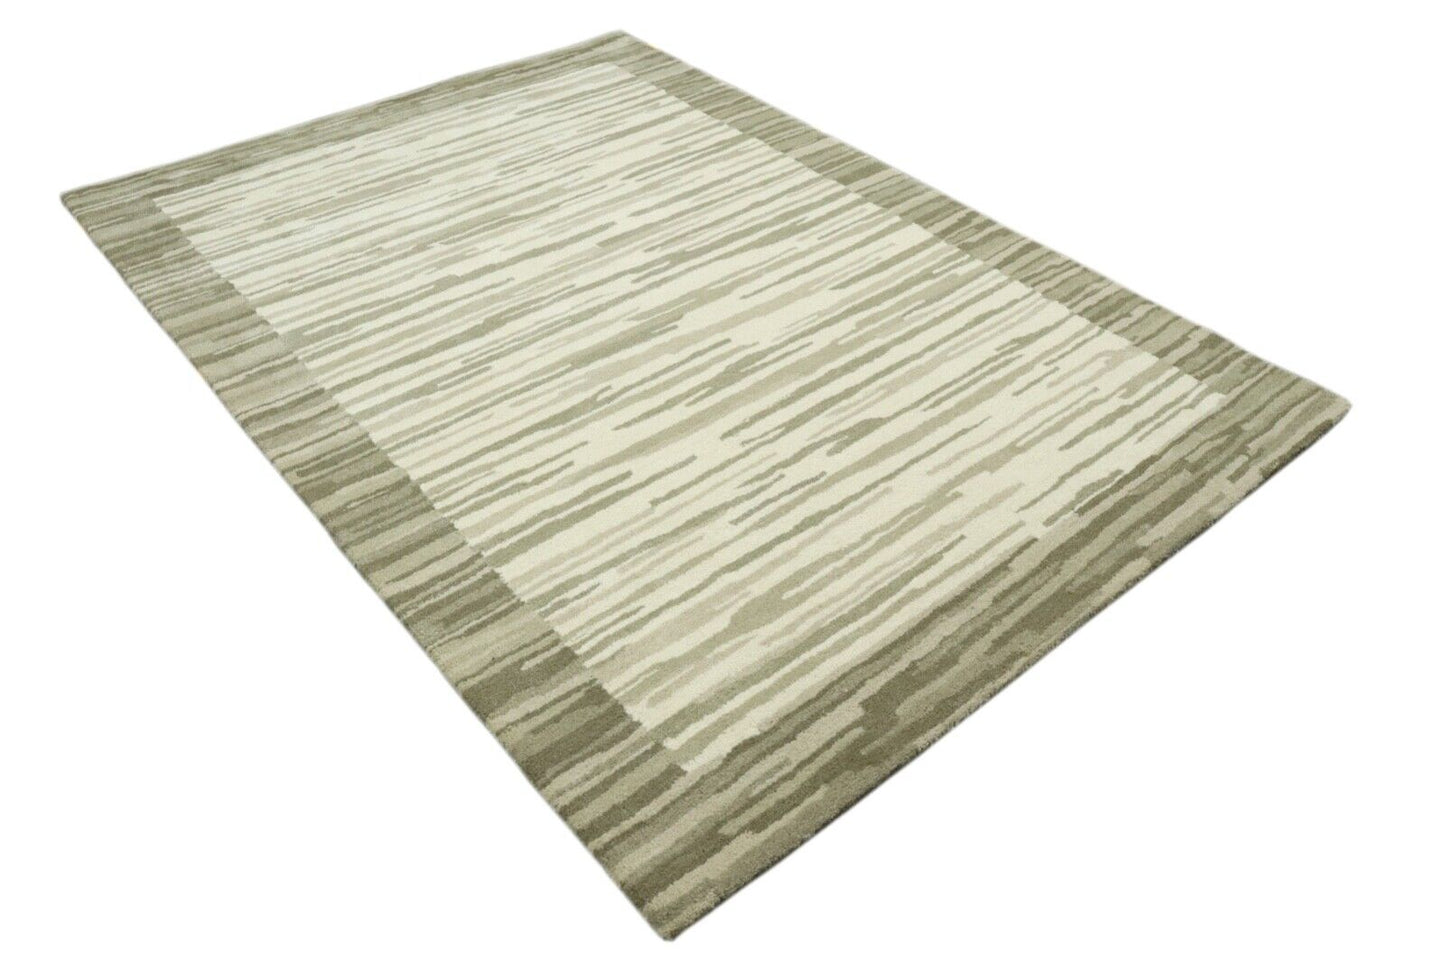 Beige Teppich 100% Wolle 160X230 cm Handarbeit Handgetuftet T922